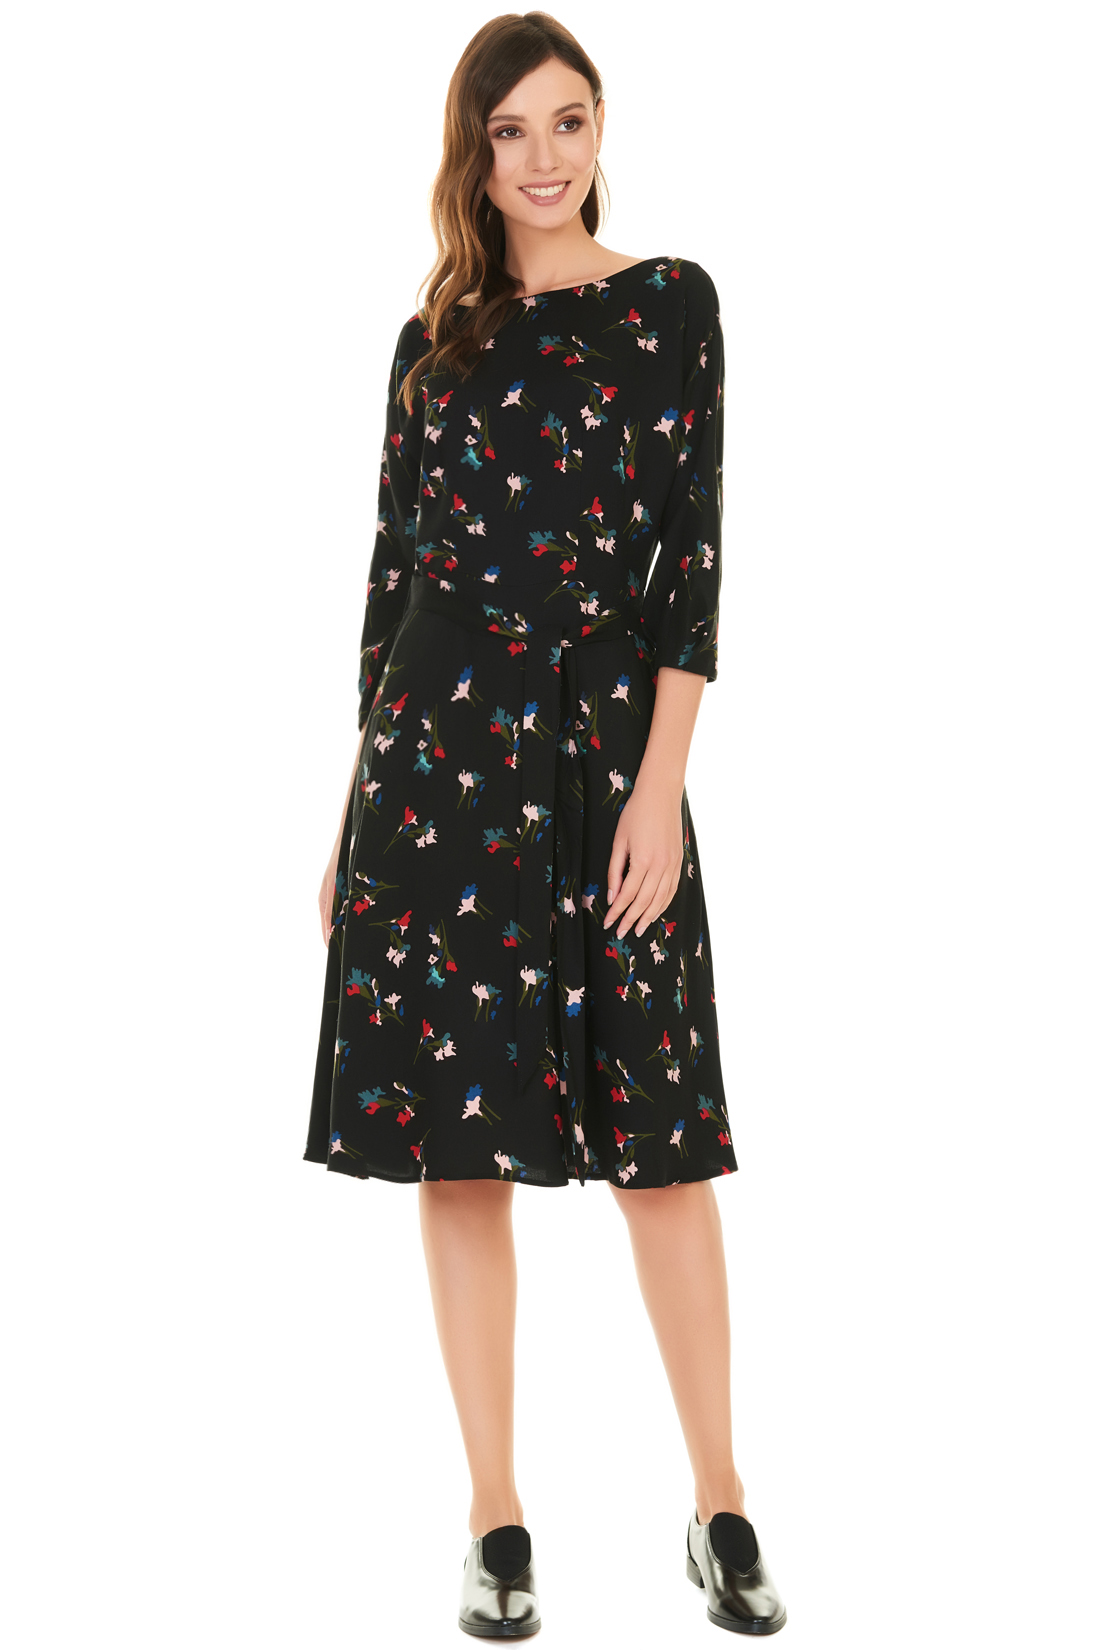 Платье с цельнокроенными рукавами и поясом (арт. baon B457504), размер XL, цвет черный Платье с цельнокроенными рукавами и поясом (арт. baon B457504) - фото 5